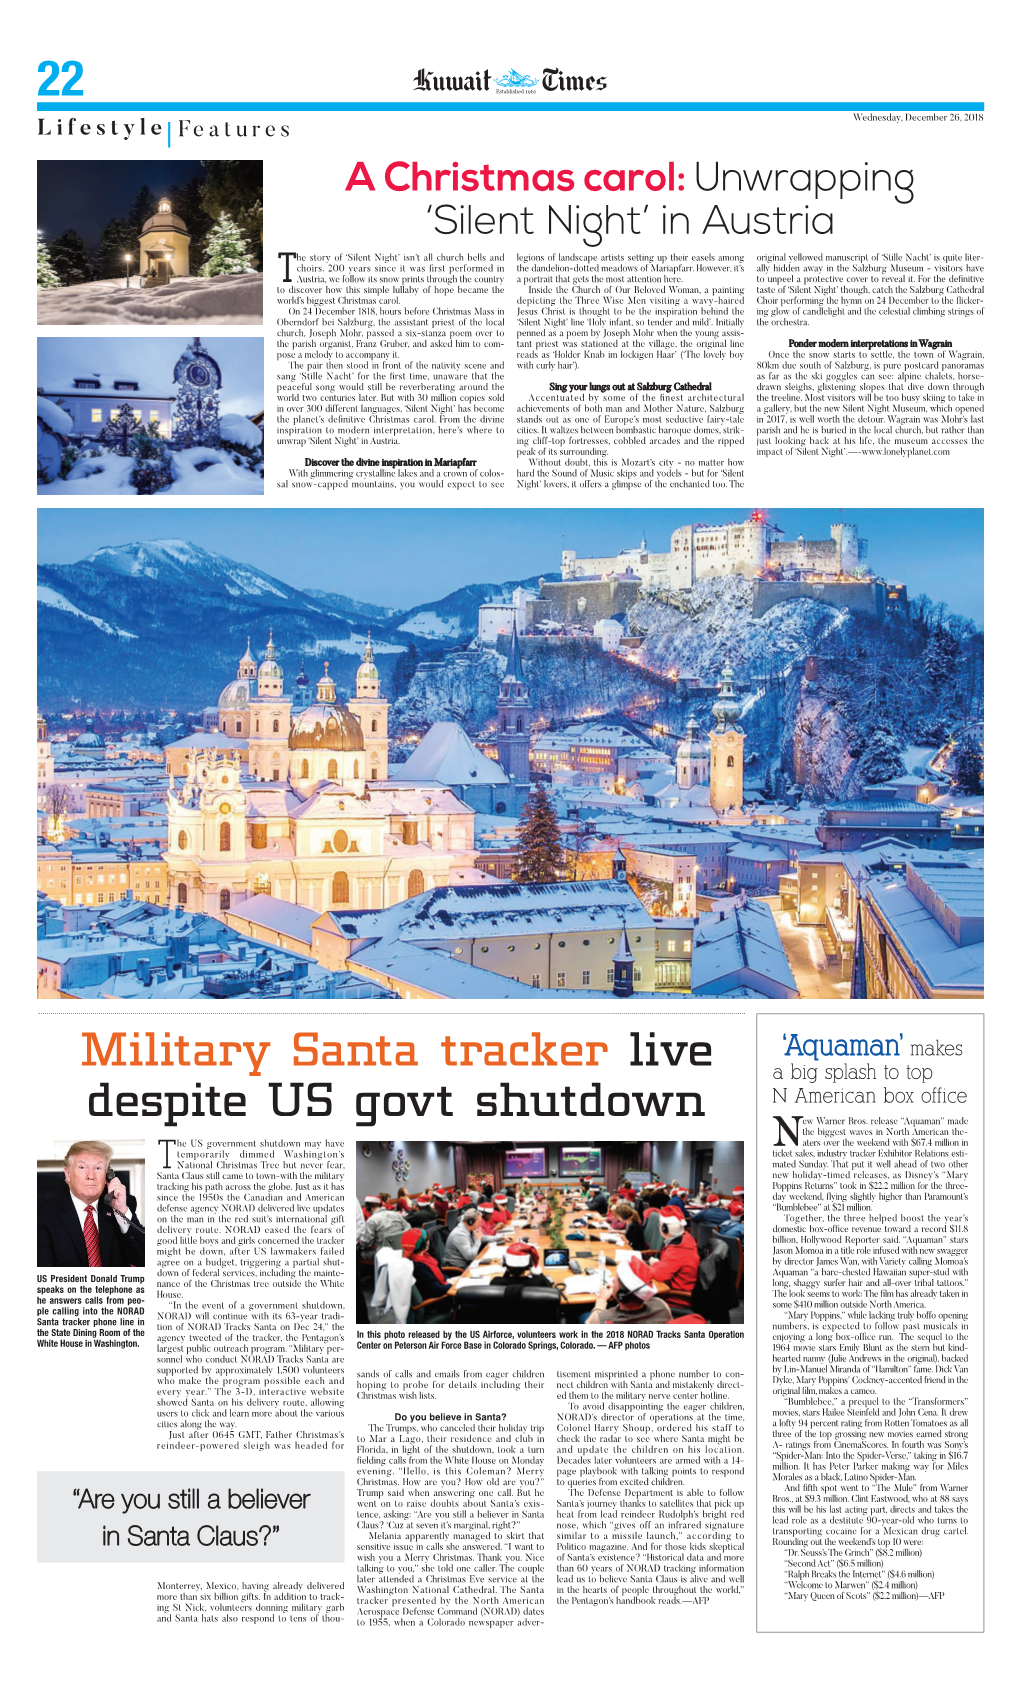 Military Santa Tracker Live Despite US Govt Shutdown